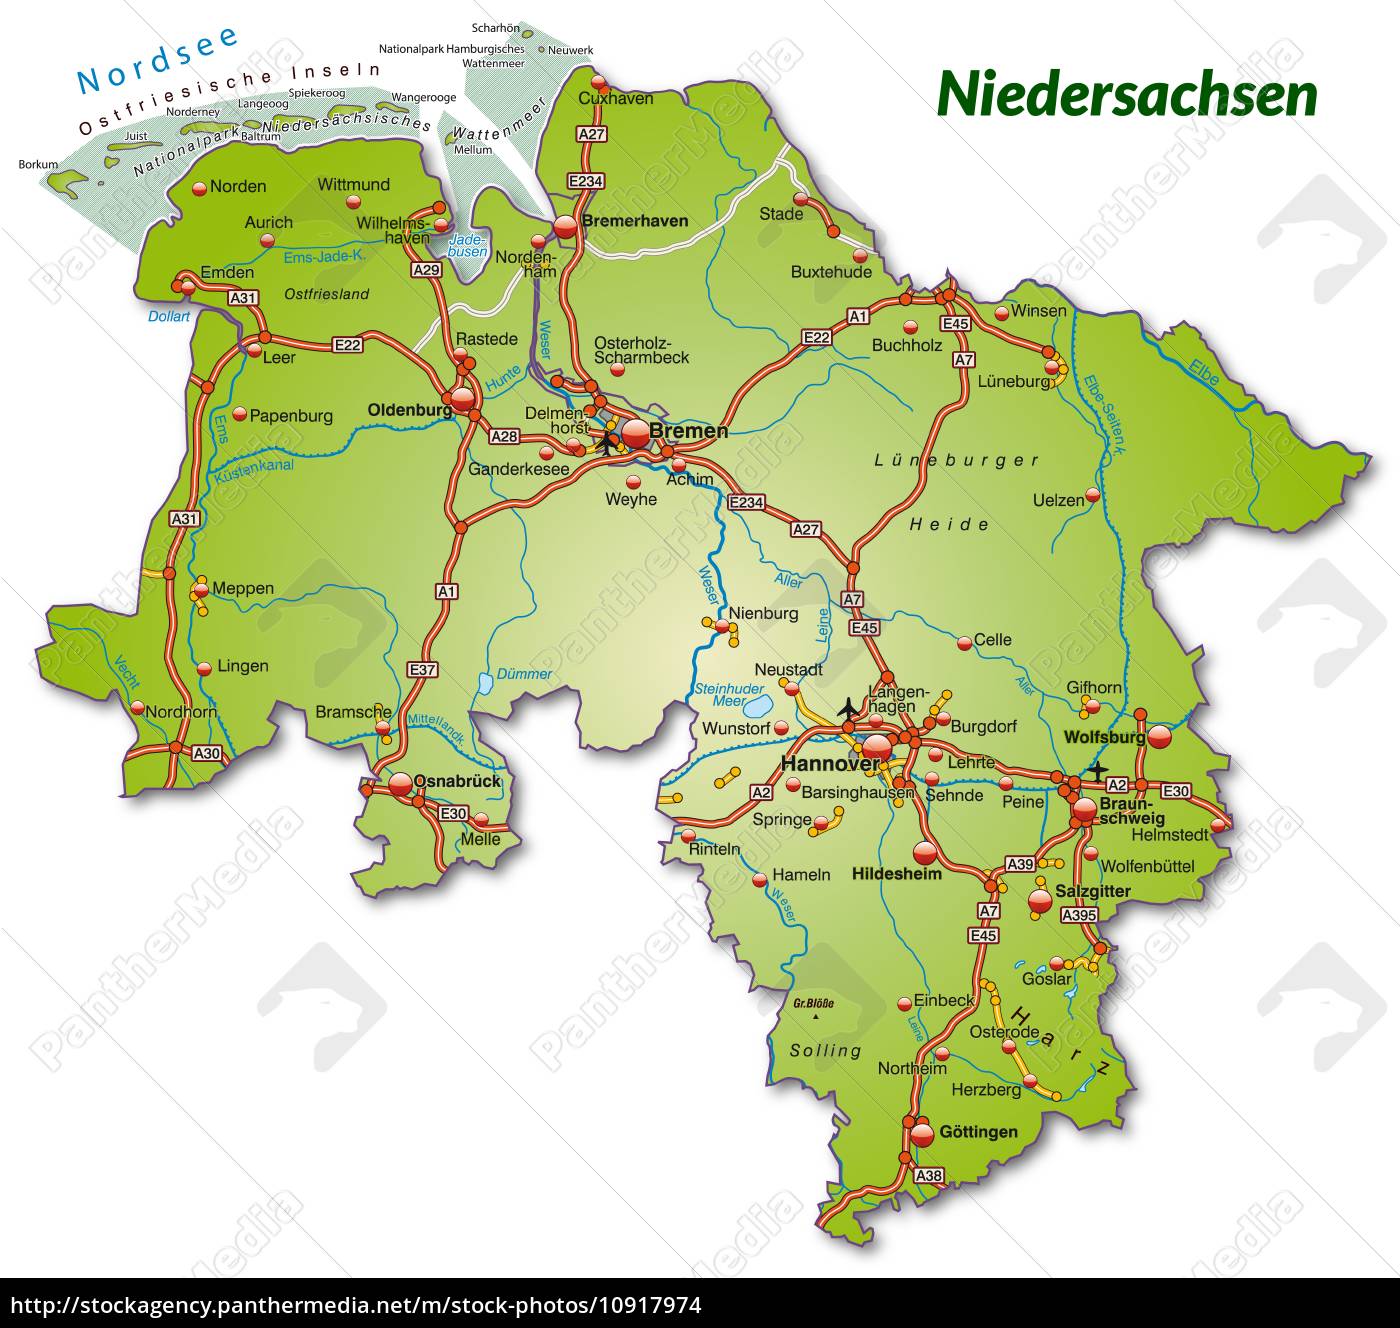 Karte von Niedersachsen mit Verkehrsnetz - Stock Photo - #10917974